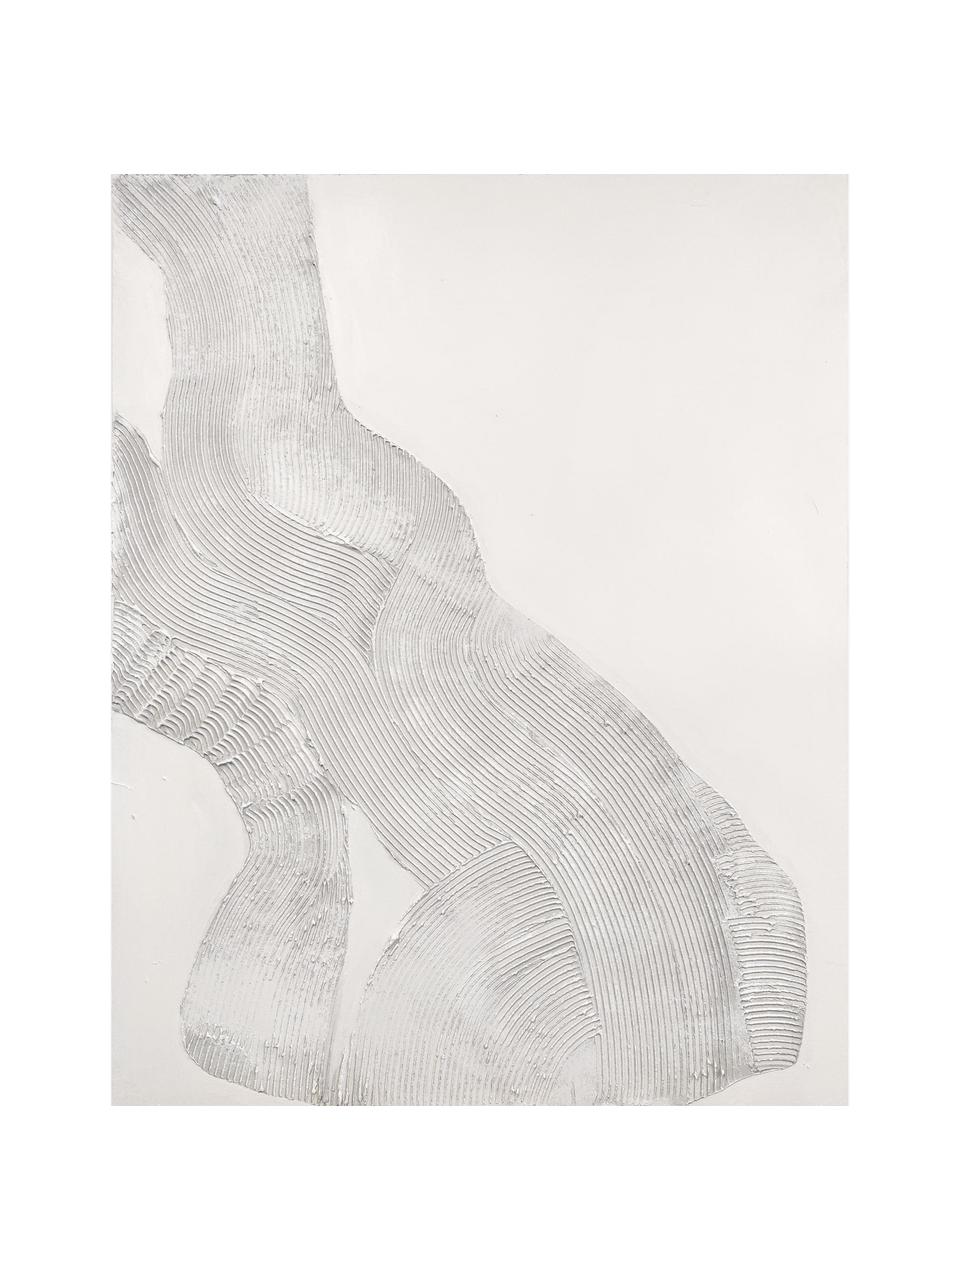 Handgemaltes Leinwandbild White Sculpture 1, Weiss, B 88 x H 118 cm